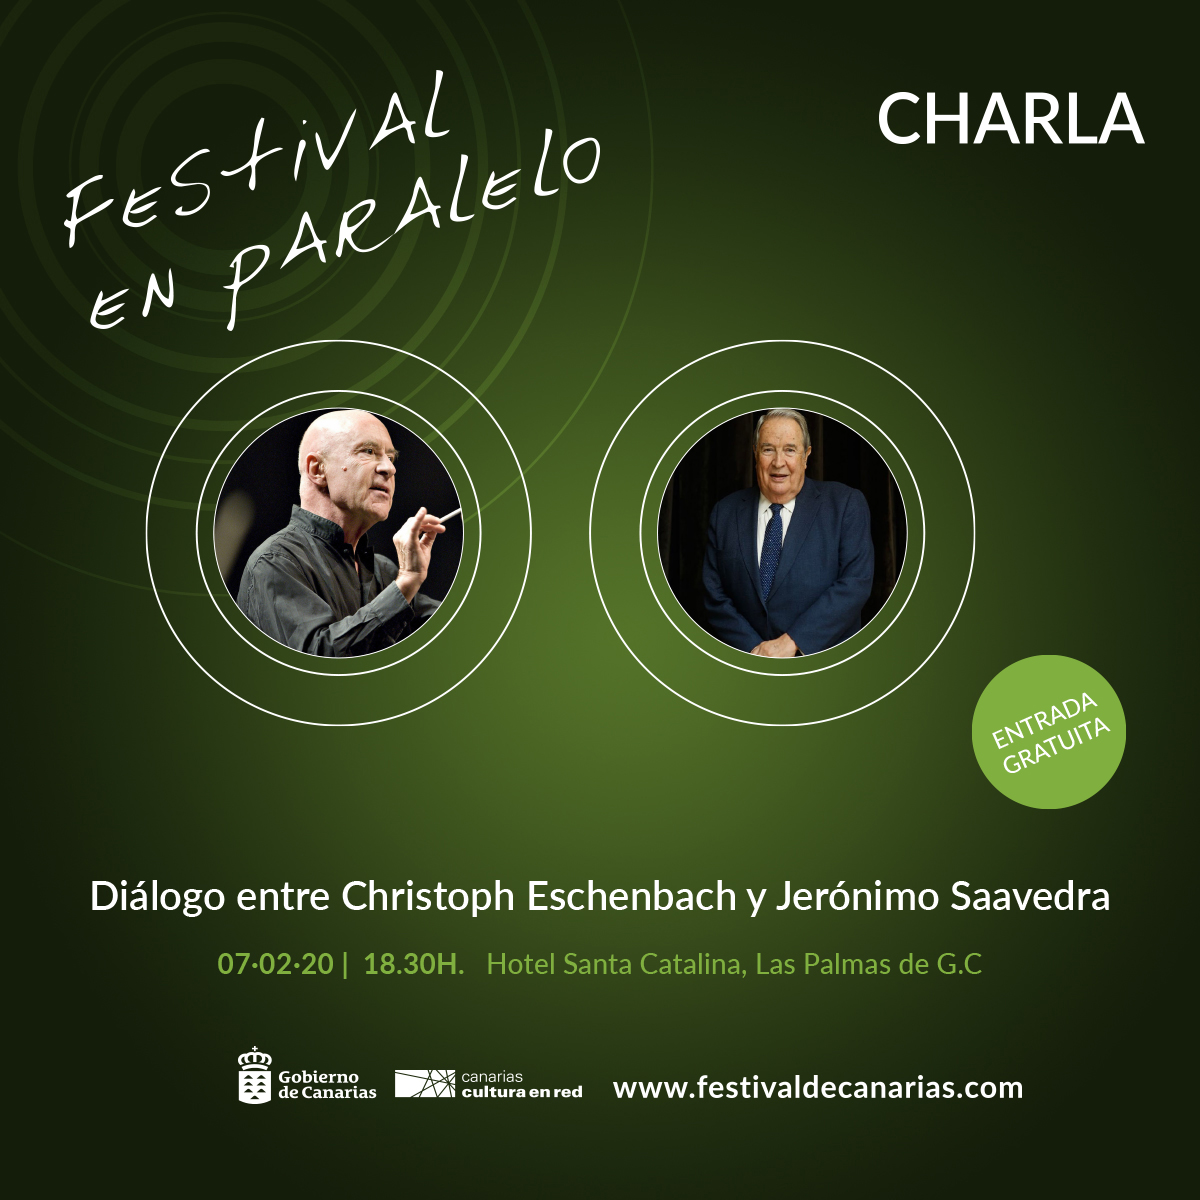 Diálogo entre Christoph Eschenbach y Jerónimo Saavedra en el cierre del Festival de Música